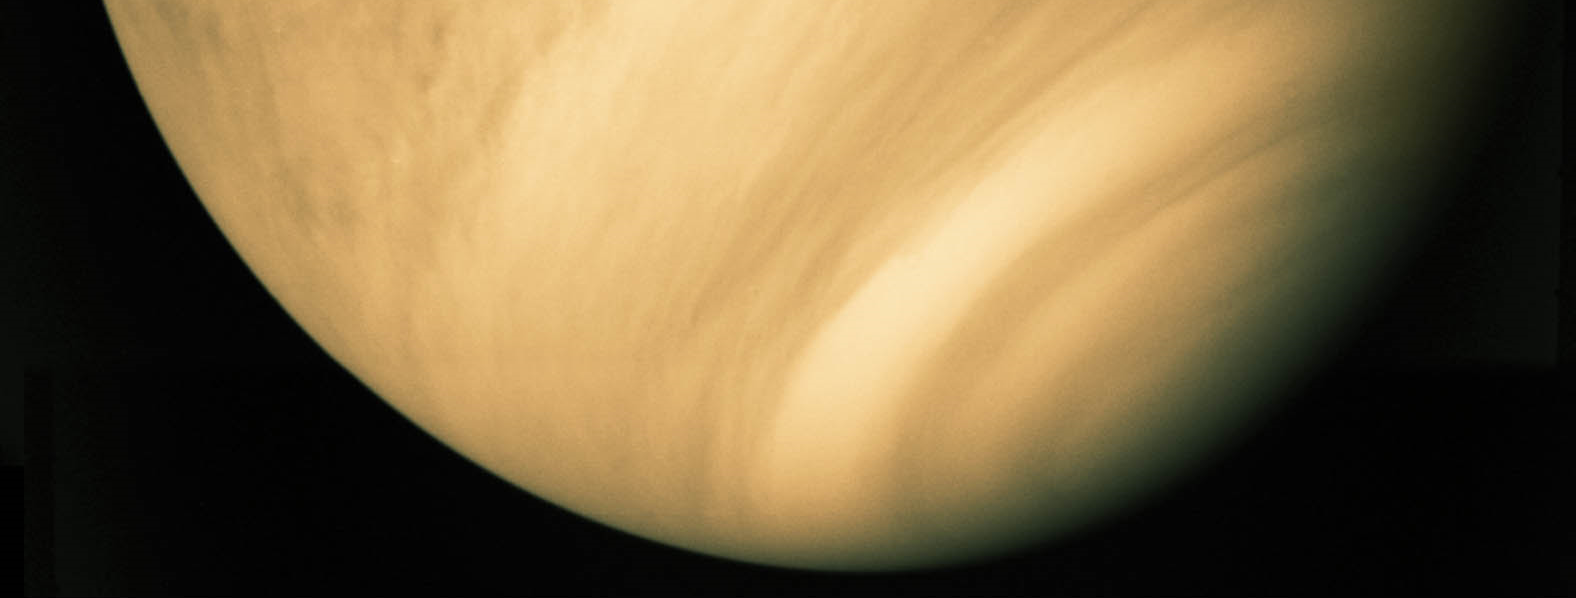 Venus Astronomia: